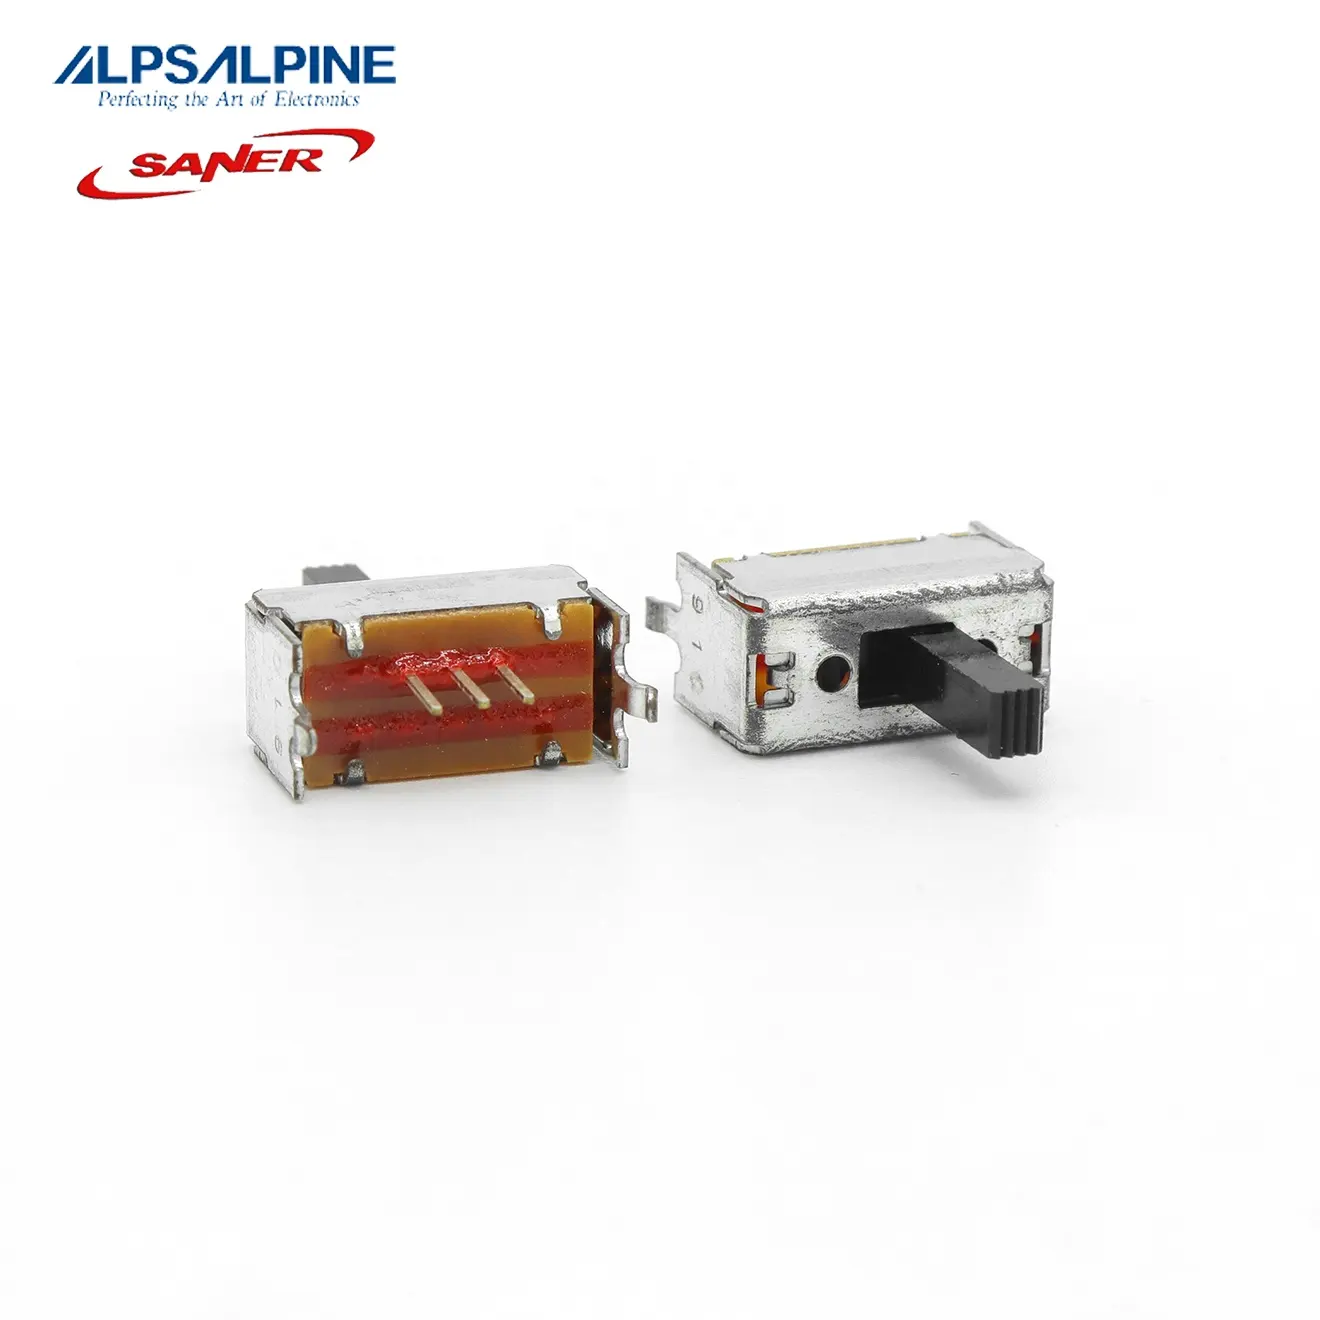 ALPS SSSF012100 8.5mm 2mm-Type de voyage agent autorisé garantie authentique interrupteur à glissière